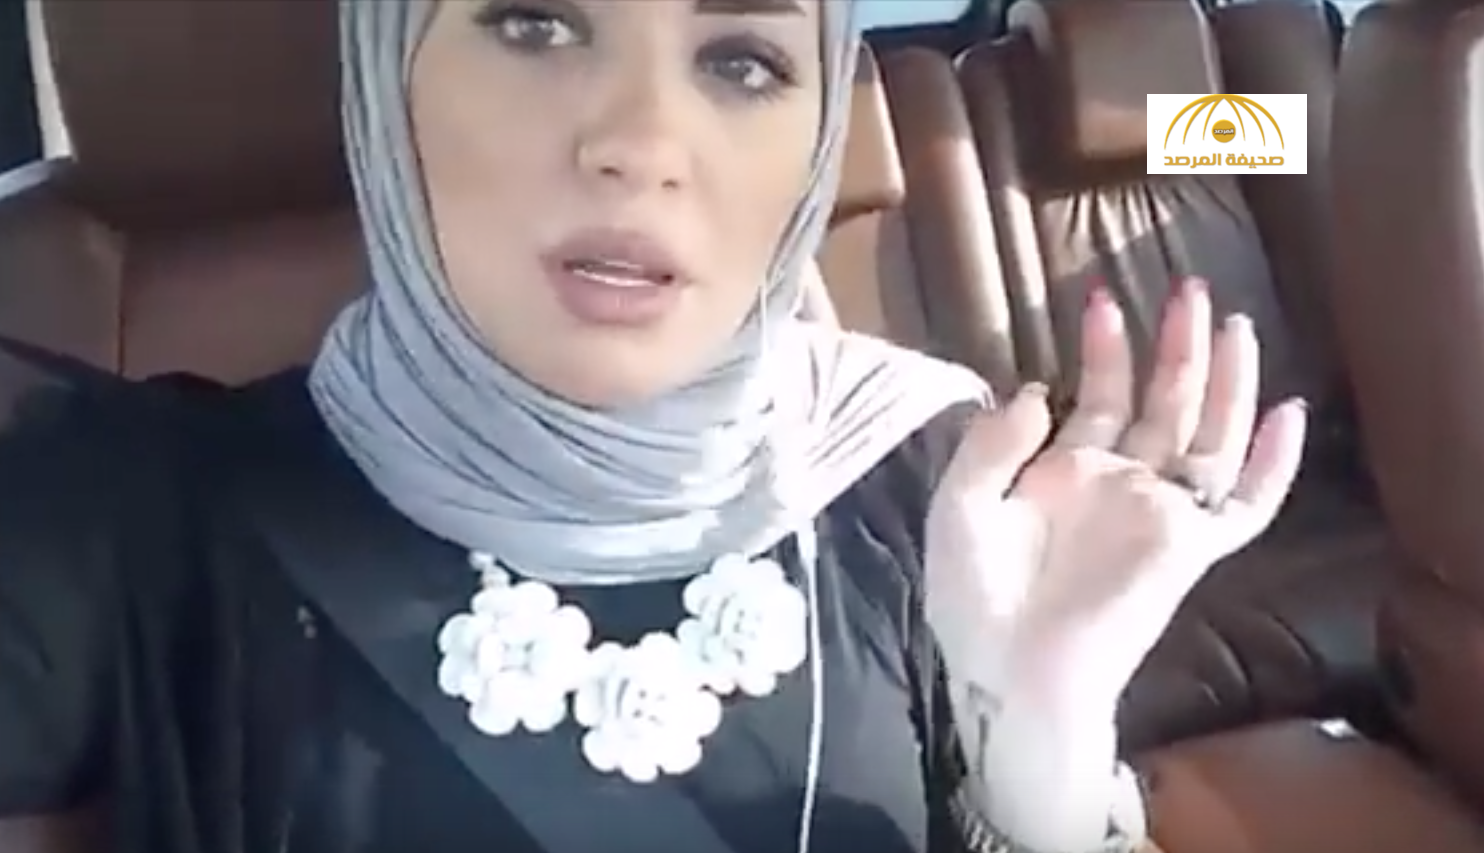 فيديو: إعلامية إماراتية تهاجم شقيقة ديانا كرزون وتتهمها بالـ"فجور"